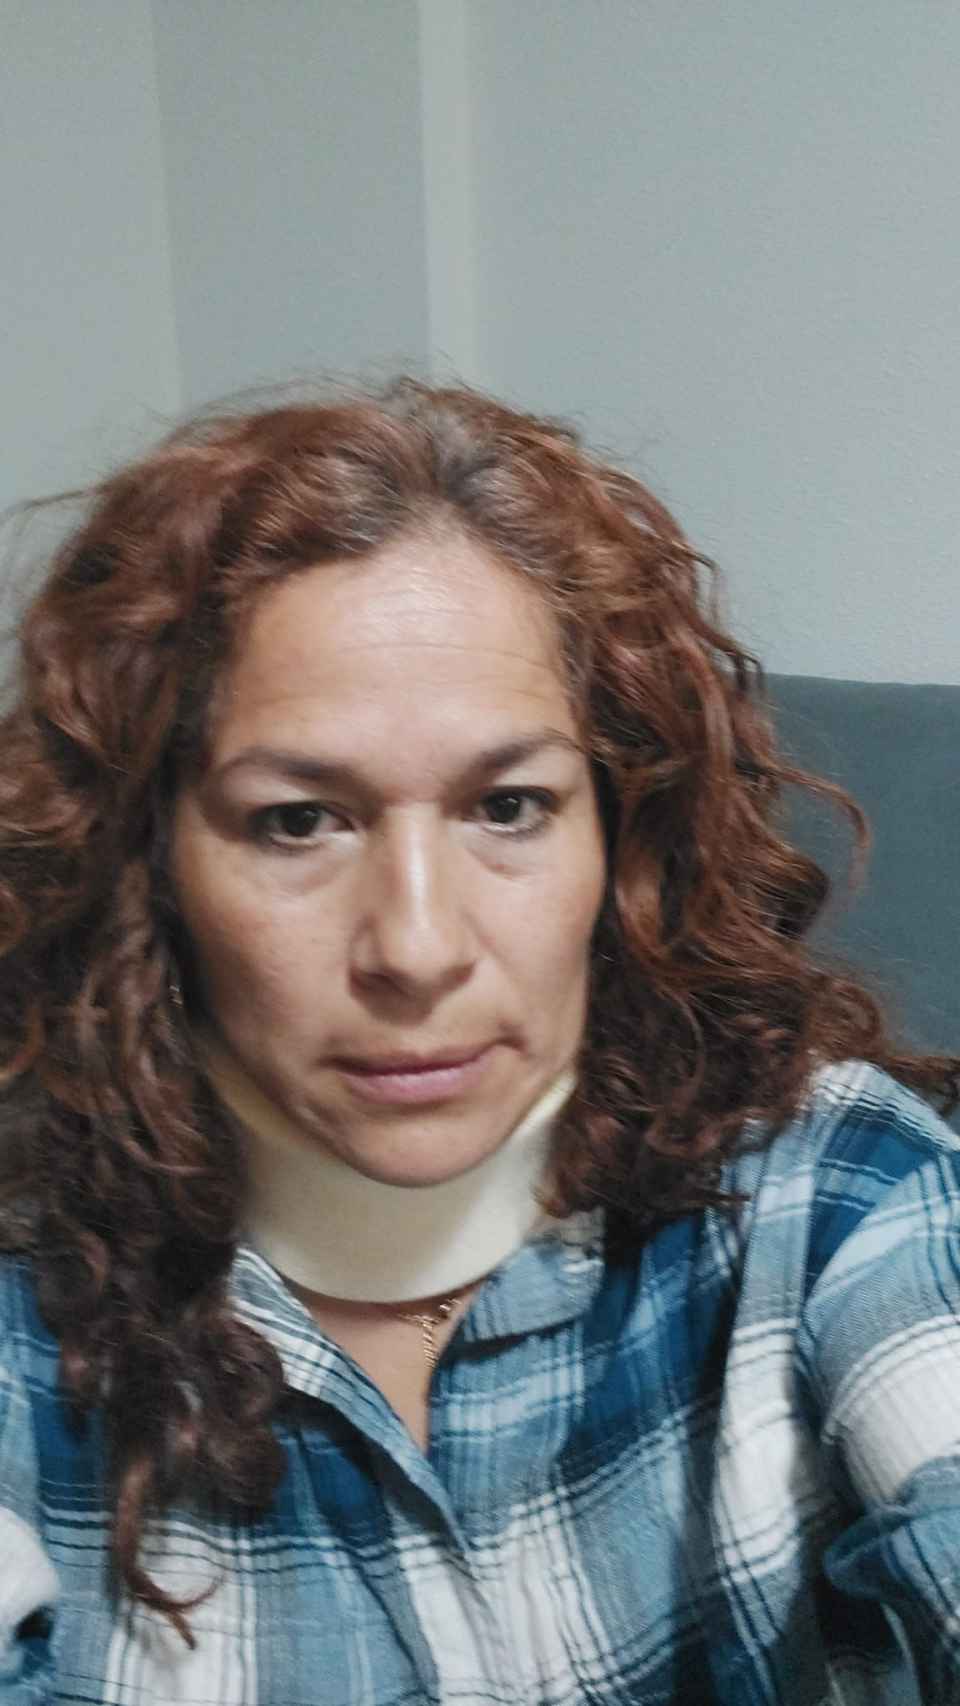 La peruana Sara Ramírez, en su casa, con un collarín tras acudir a urgencias.